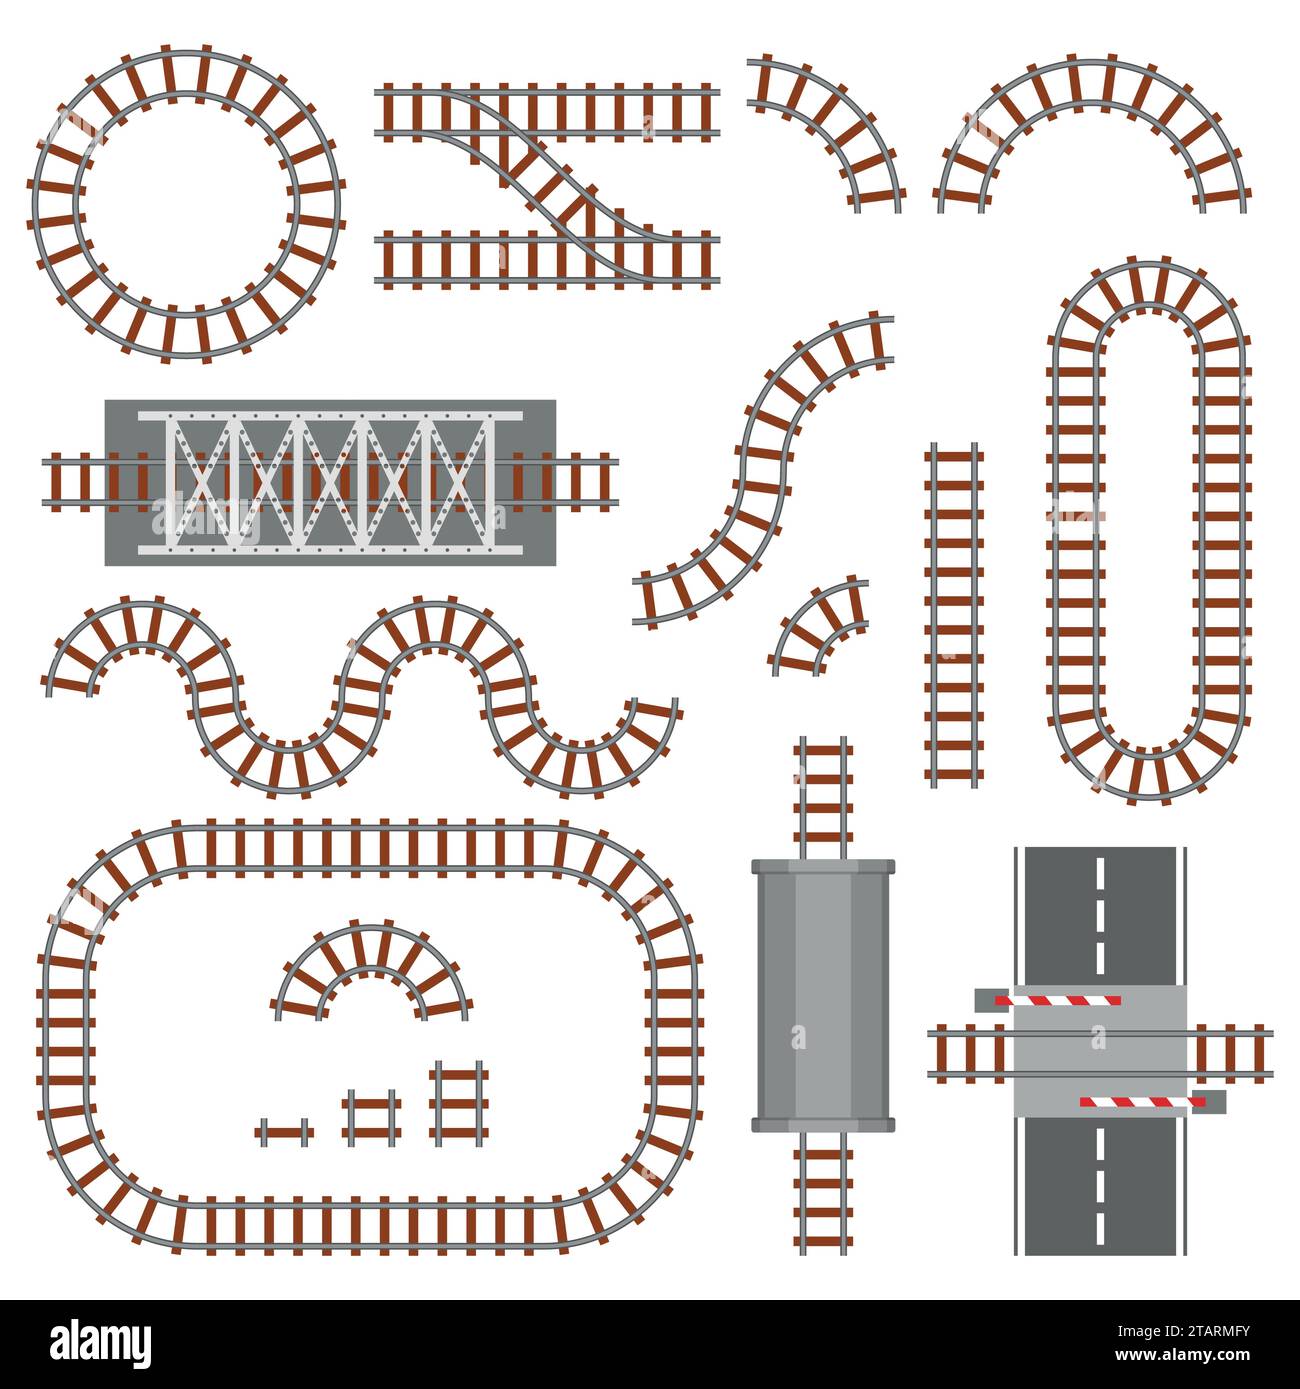 Satz von Eisenbahnteilen, Schiene oder Eisenbahn Draufsicht. Verschiedene Zugkonstruktionselemente. Zuggleise aus Stahl und Holz, Schiene Stock Vektor